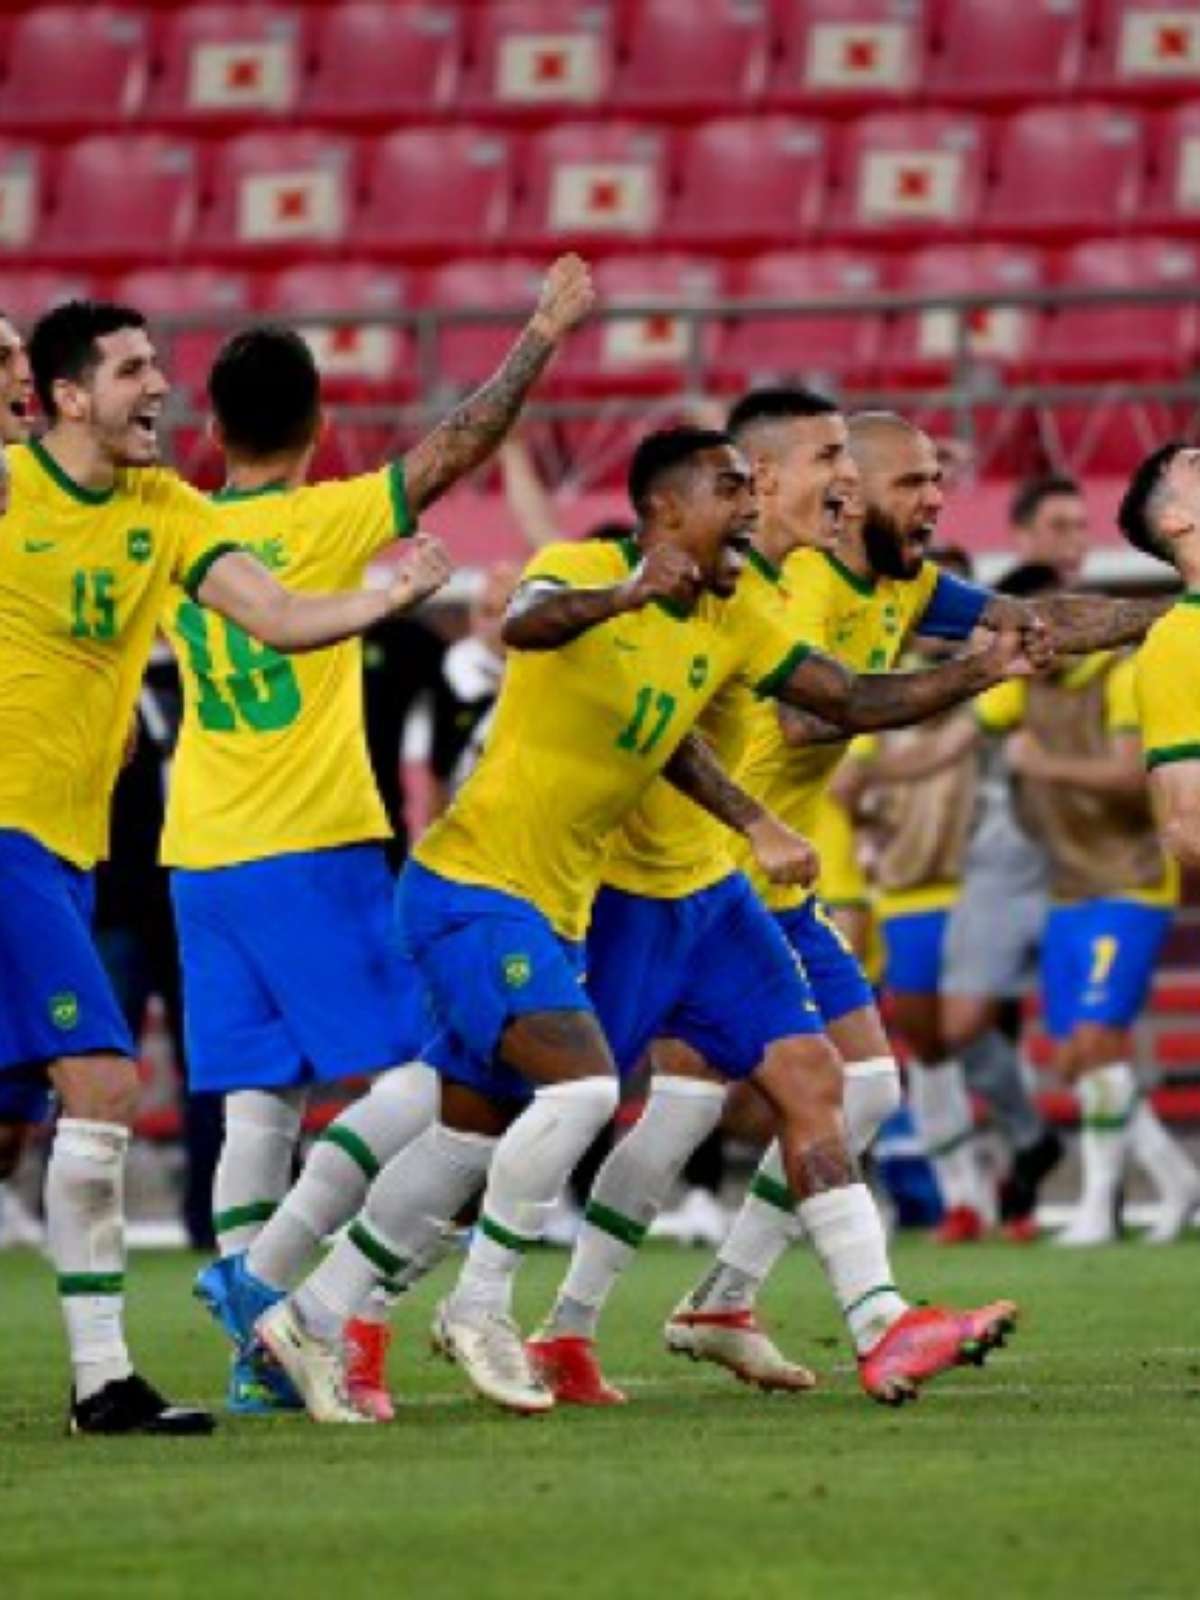 Vôlei: Brasil perde para Comitê Russo e se despede da briga pelo